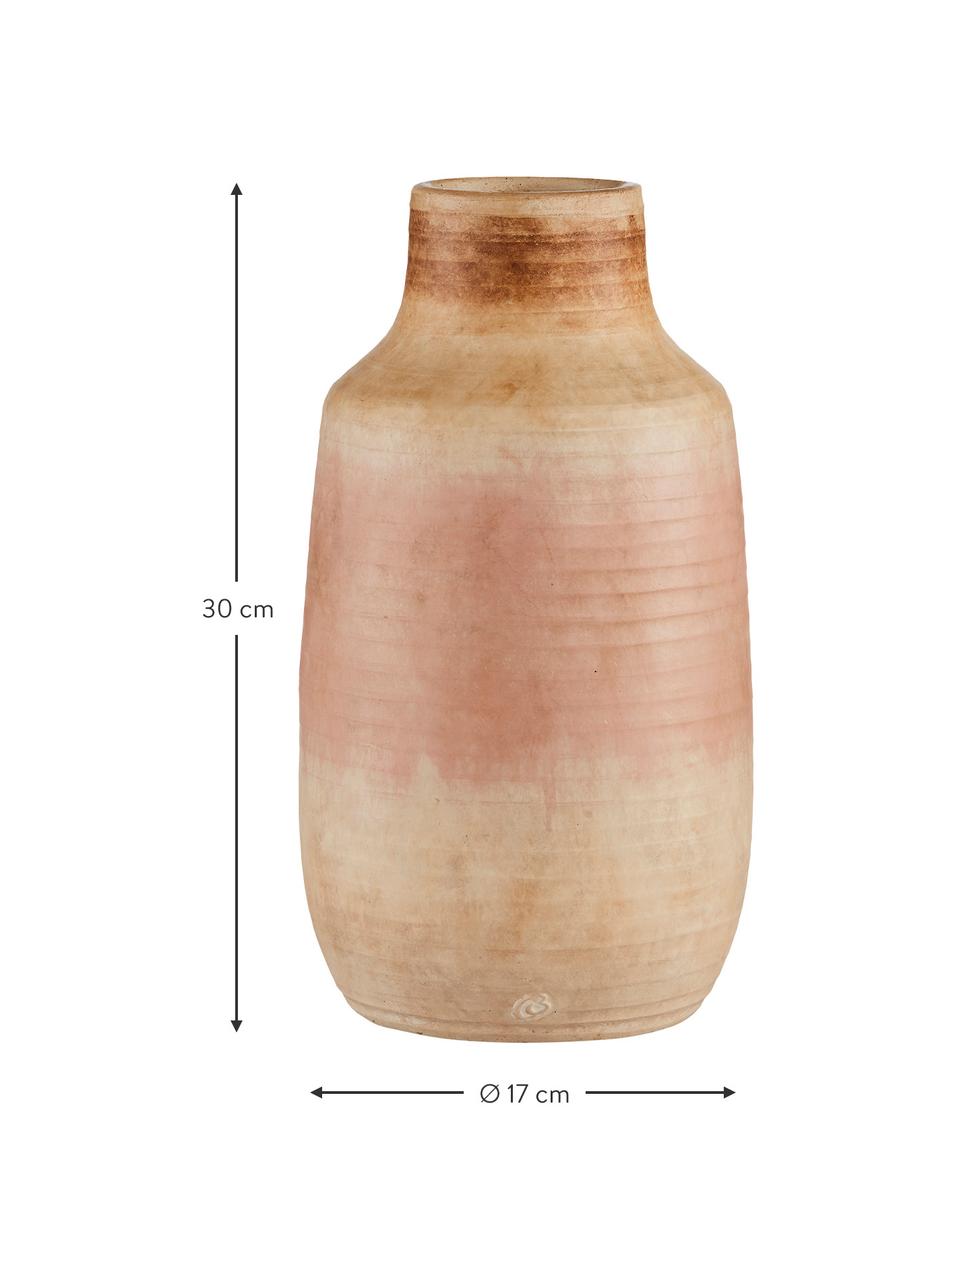 Handgefertigte Keramik-Vase Asina, Keramik, Orange, Beige, Ø 17 cm